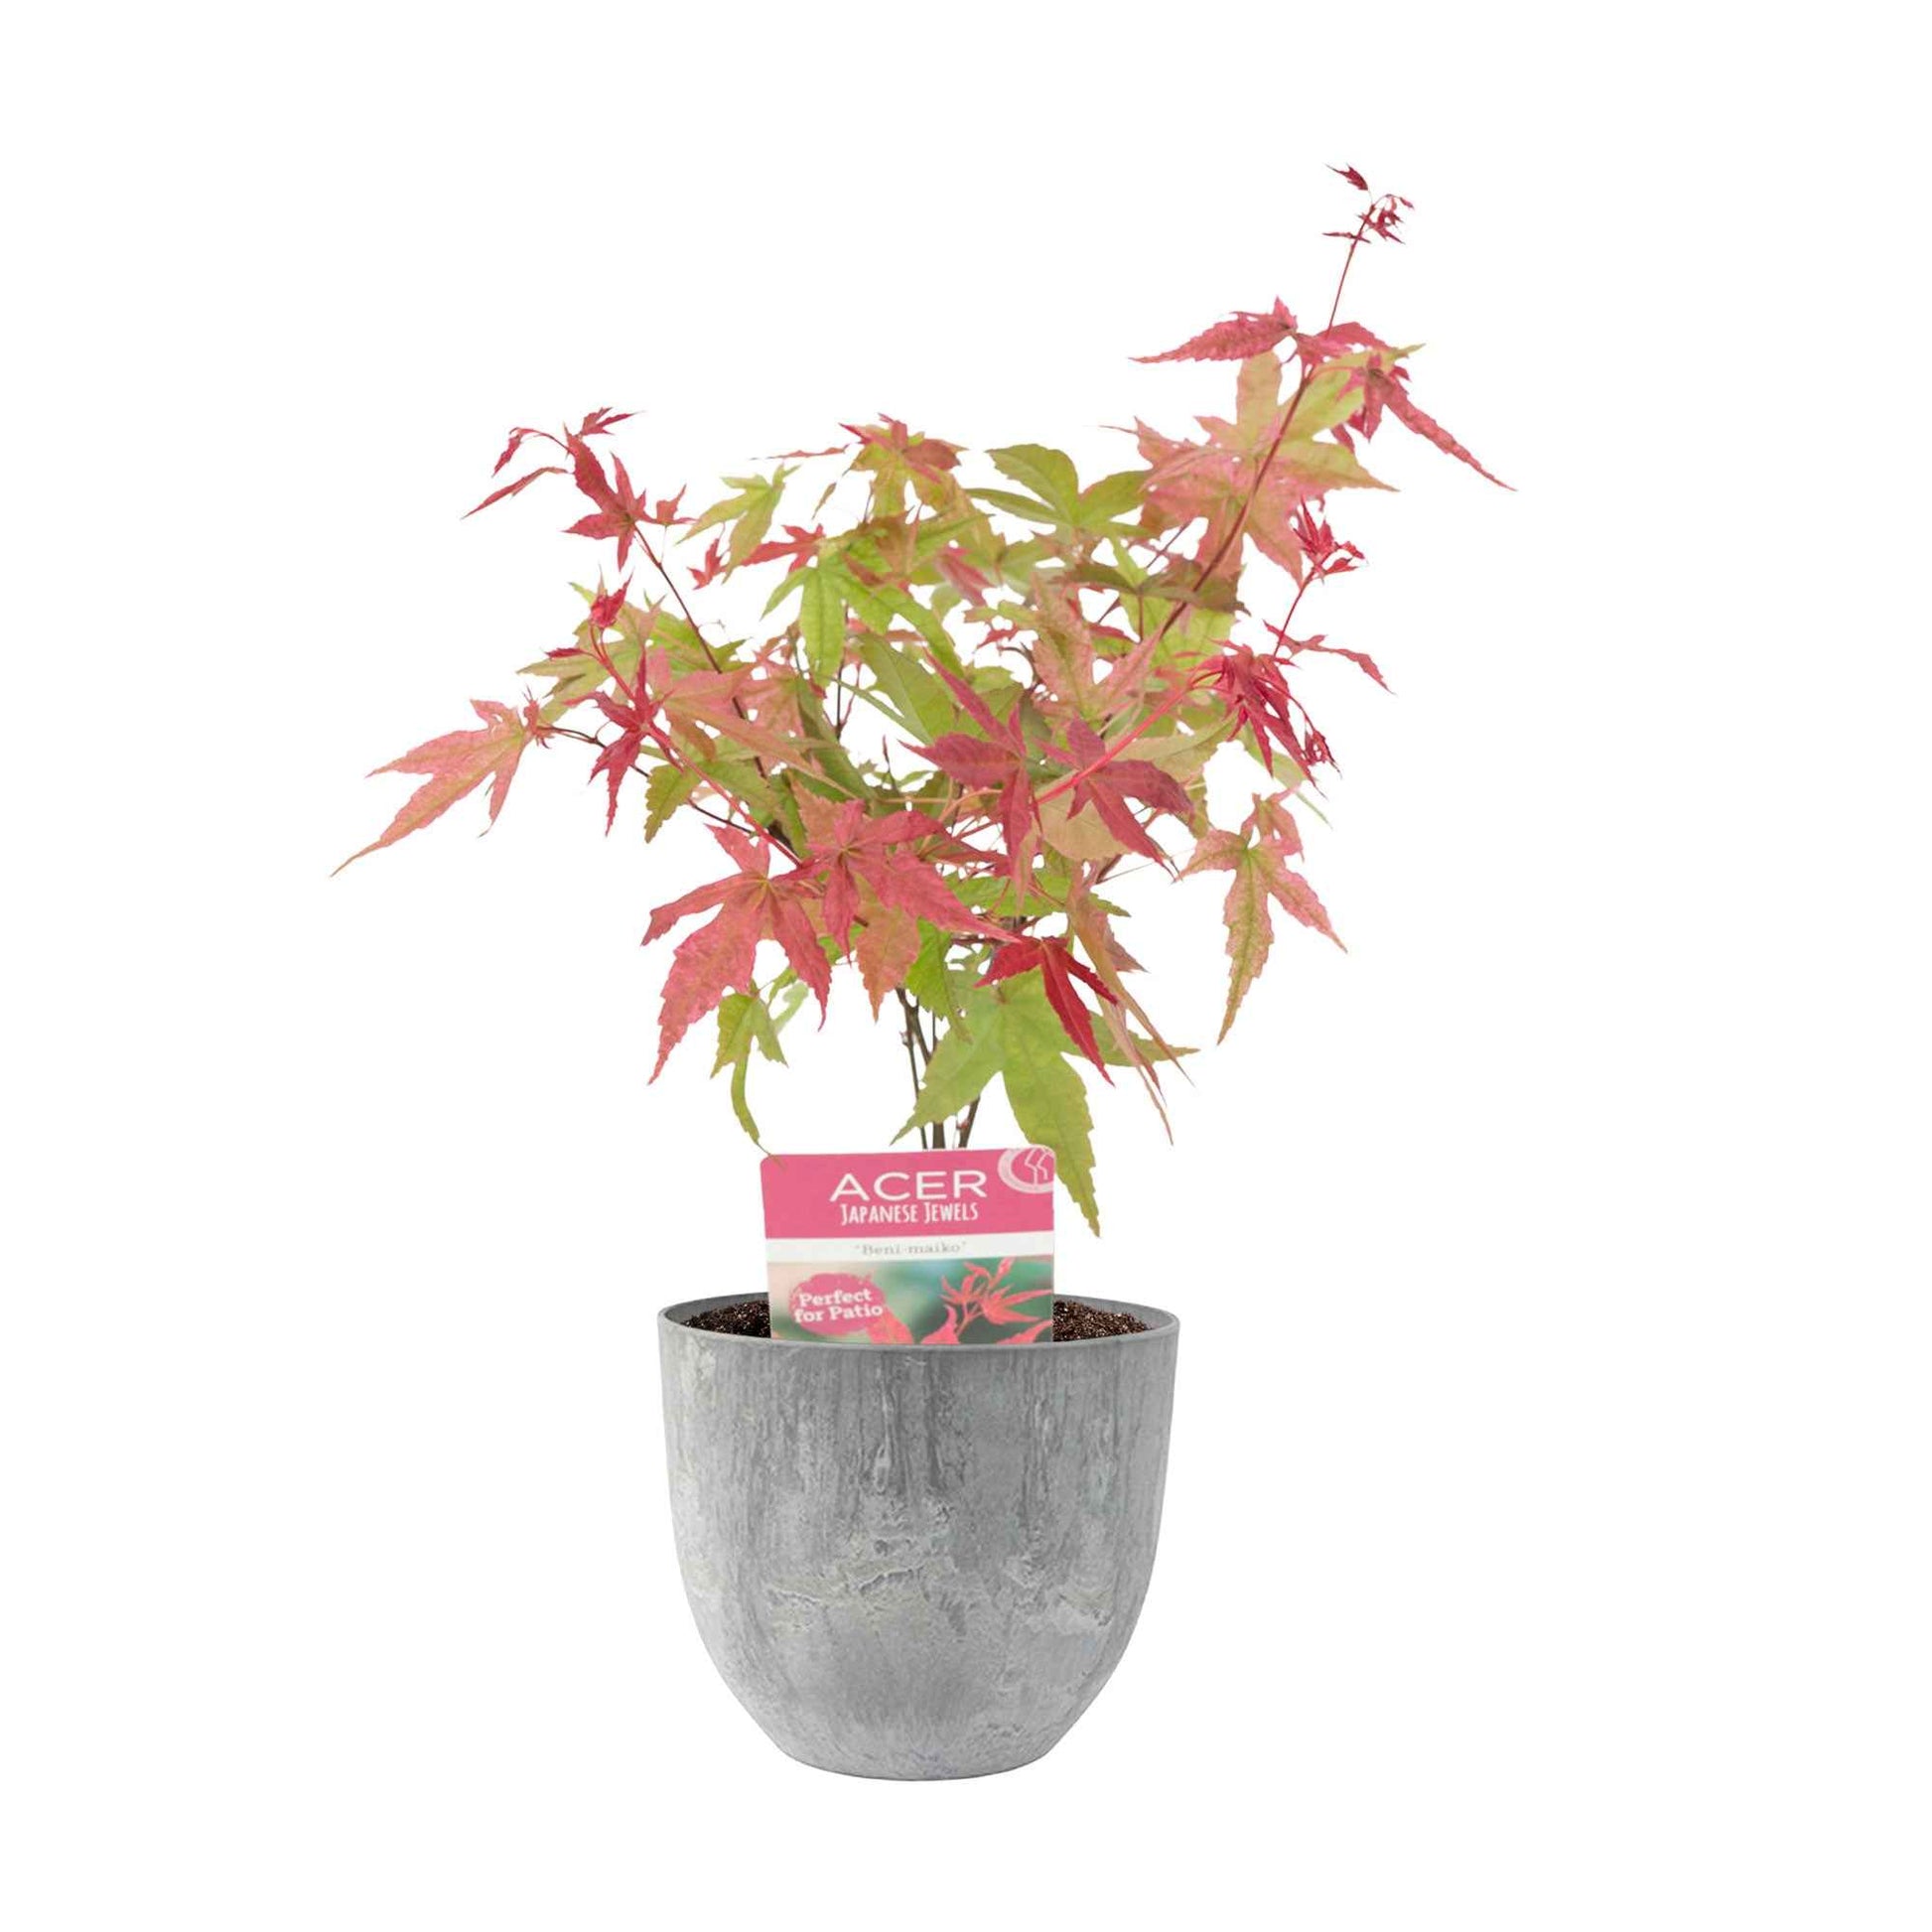 Japanischer Ahorn Acer 'Beni-maiko' rosa-rot inkl. Ziertopf - Winterhart - Gartenpflanzen im Ziertopf